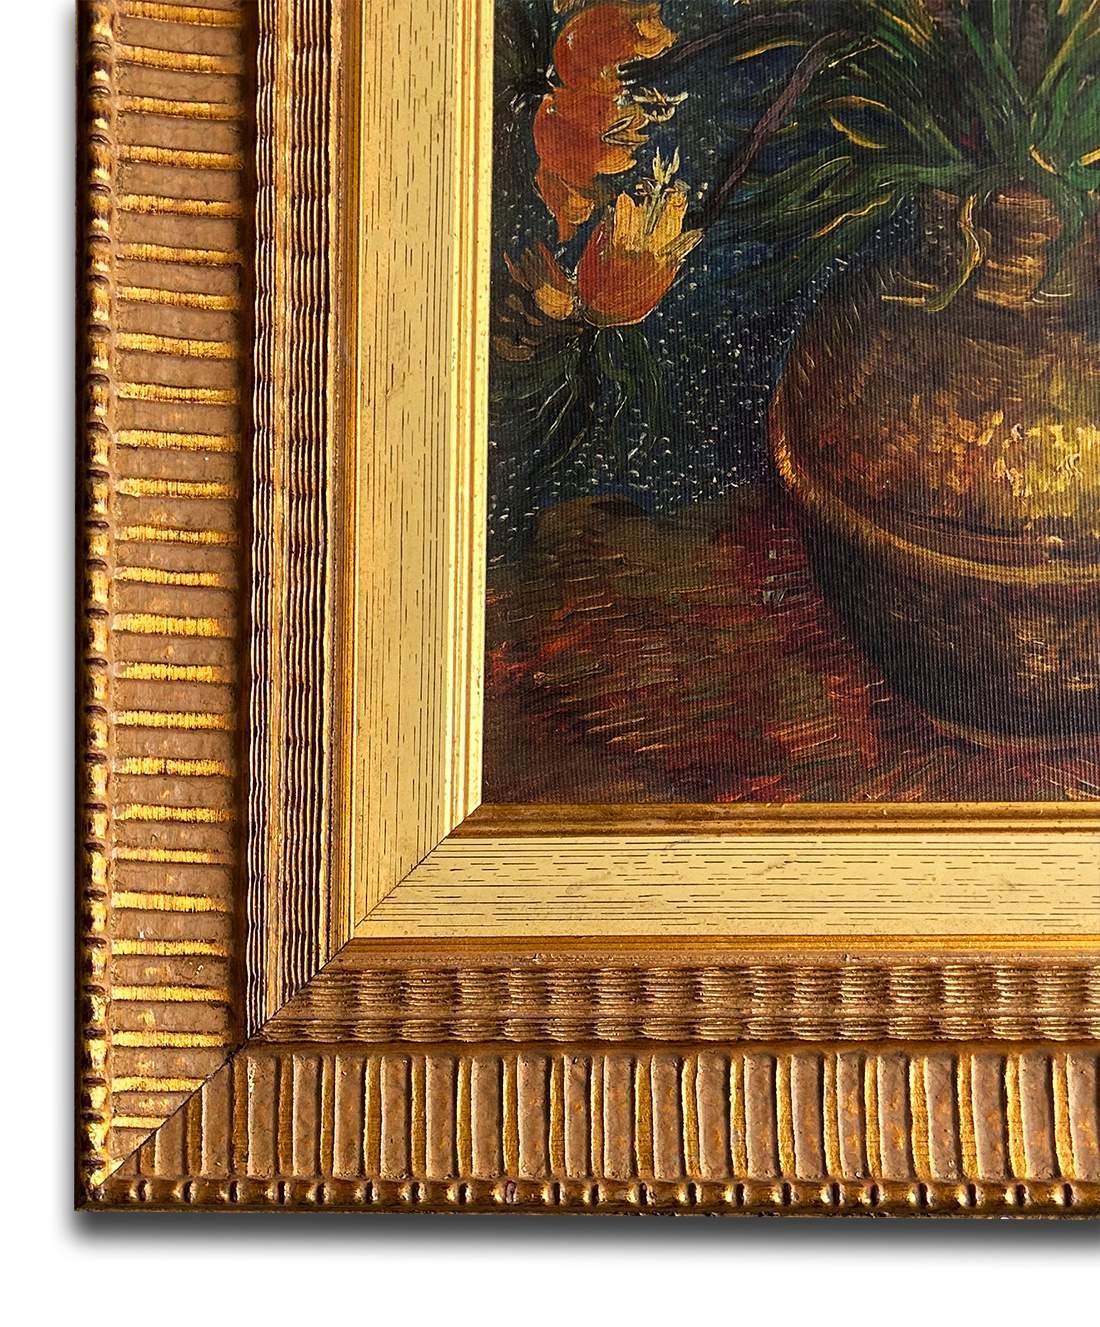 Flowers in Copper Vase By Van Gogh 37x42 cm eller 15x17 ins